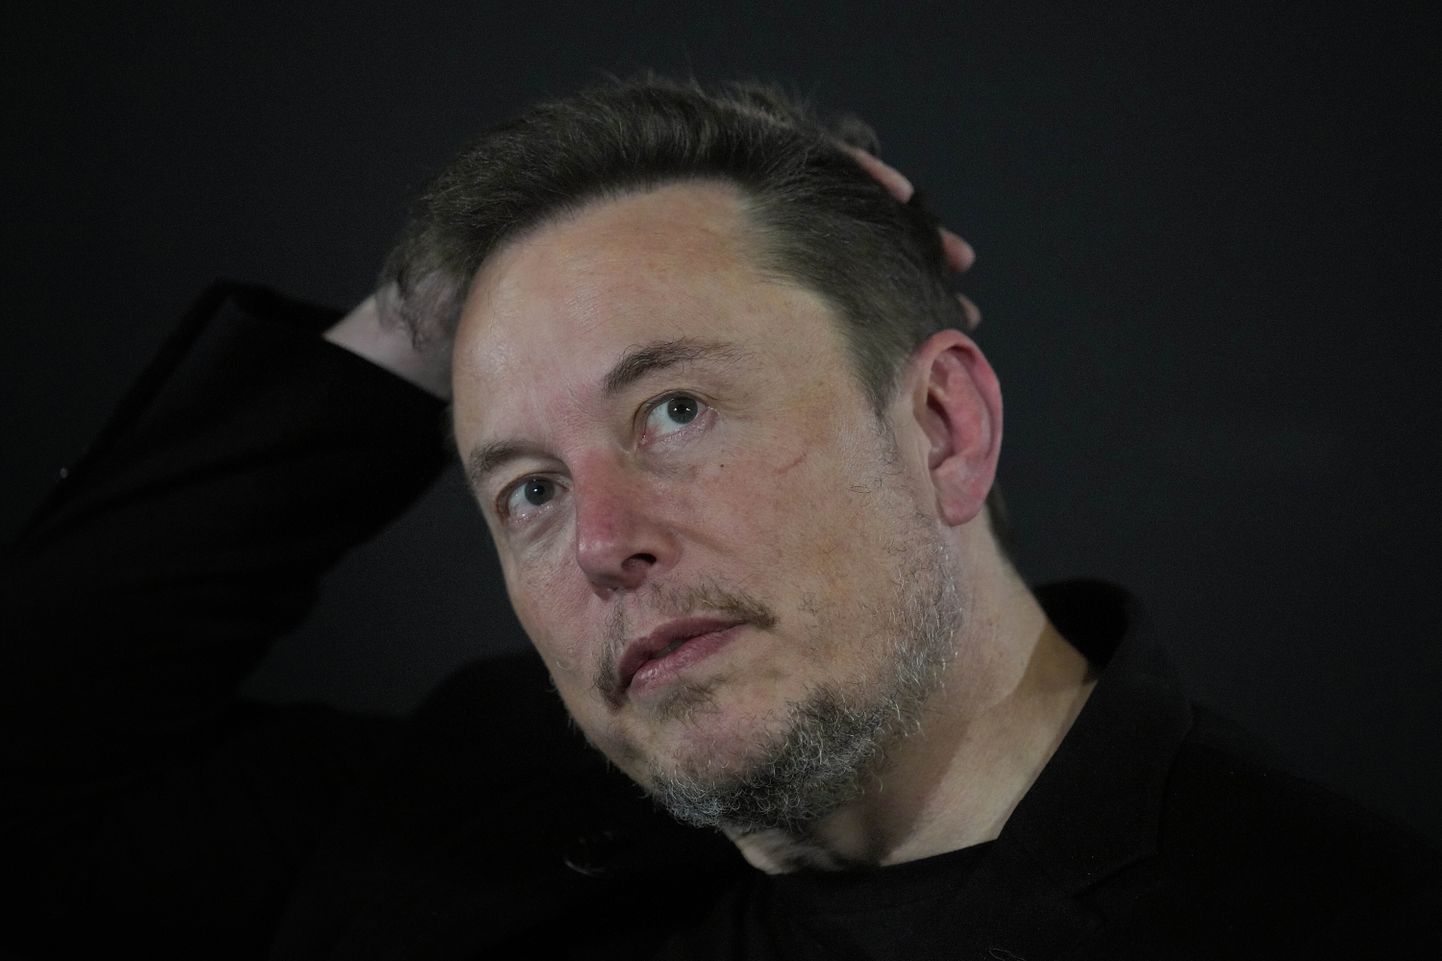 Tesla ning Space xi juht Elon Musk on sattunud juudikogukondade kriitika alla, sest sotsiaalmeediavõrgustikus X kõlavad üha sagendamini antisemiitlikud väljaütlemised.